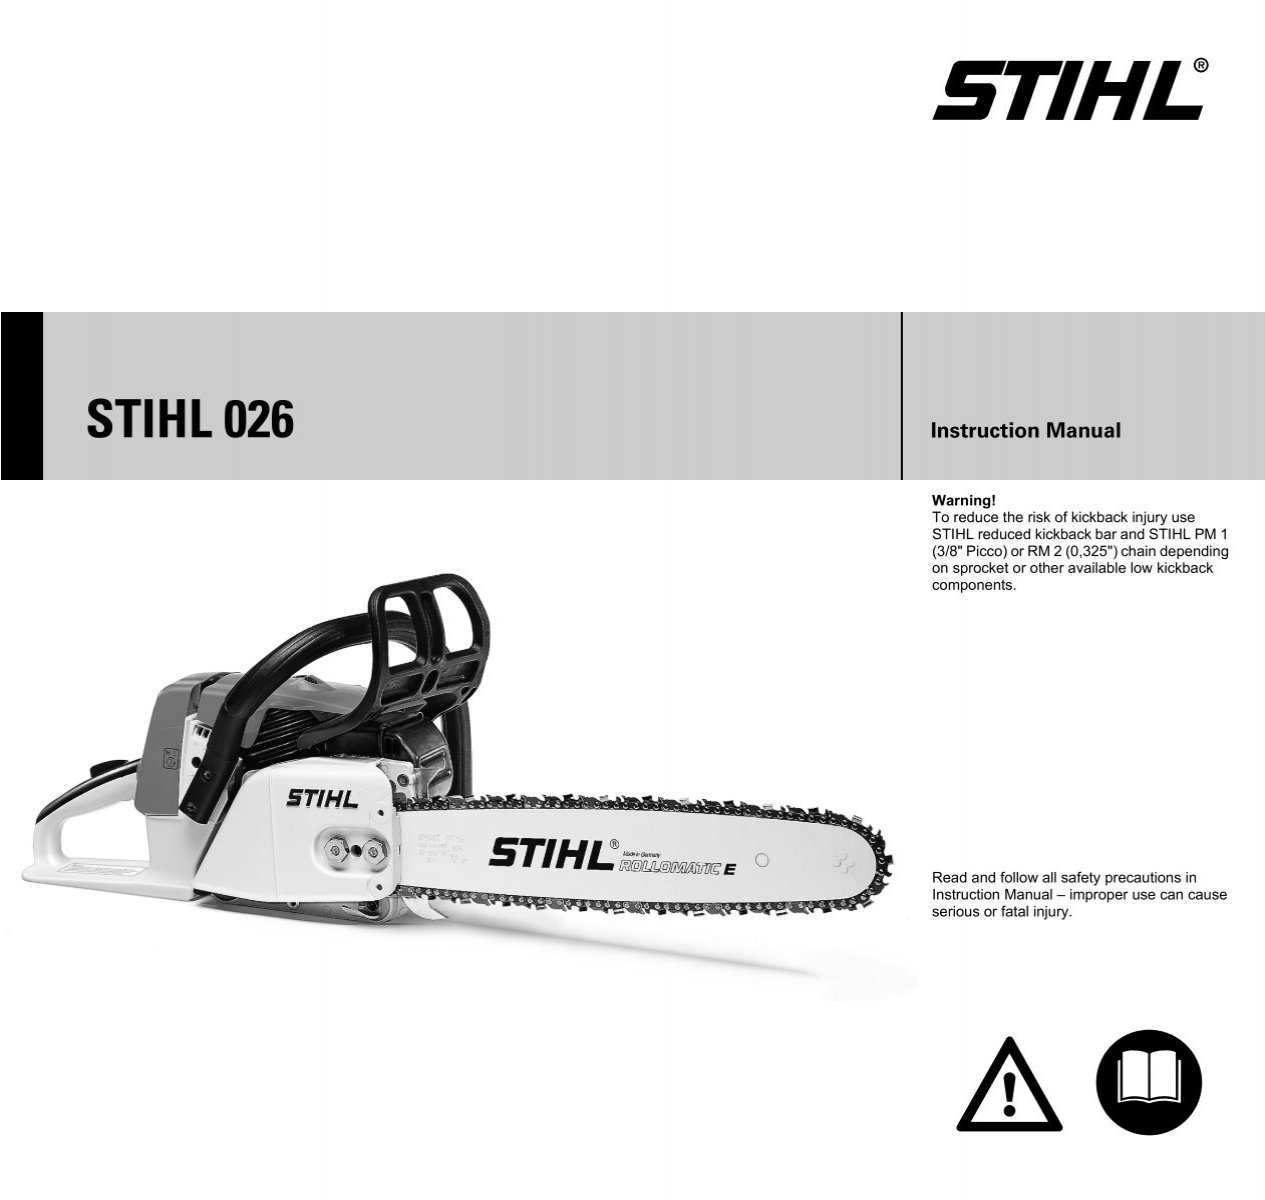 Stihl 026 pro manual